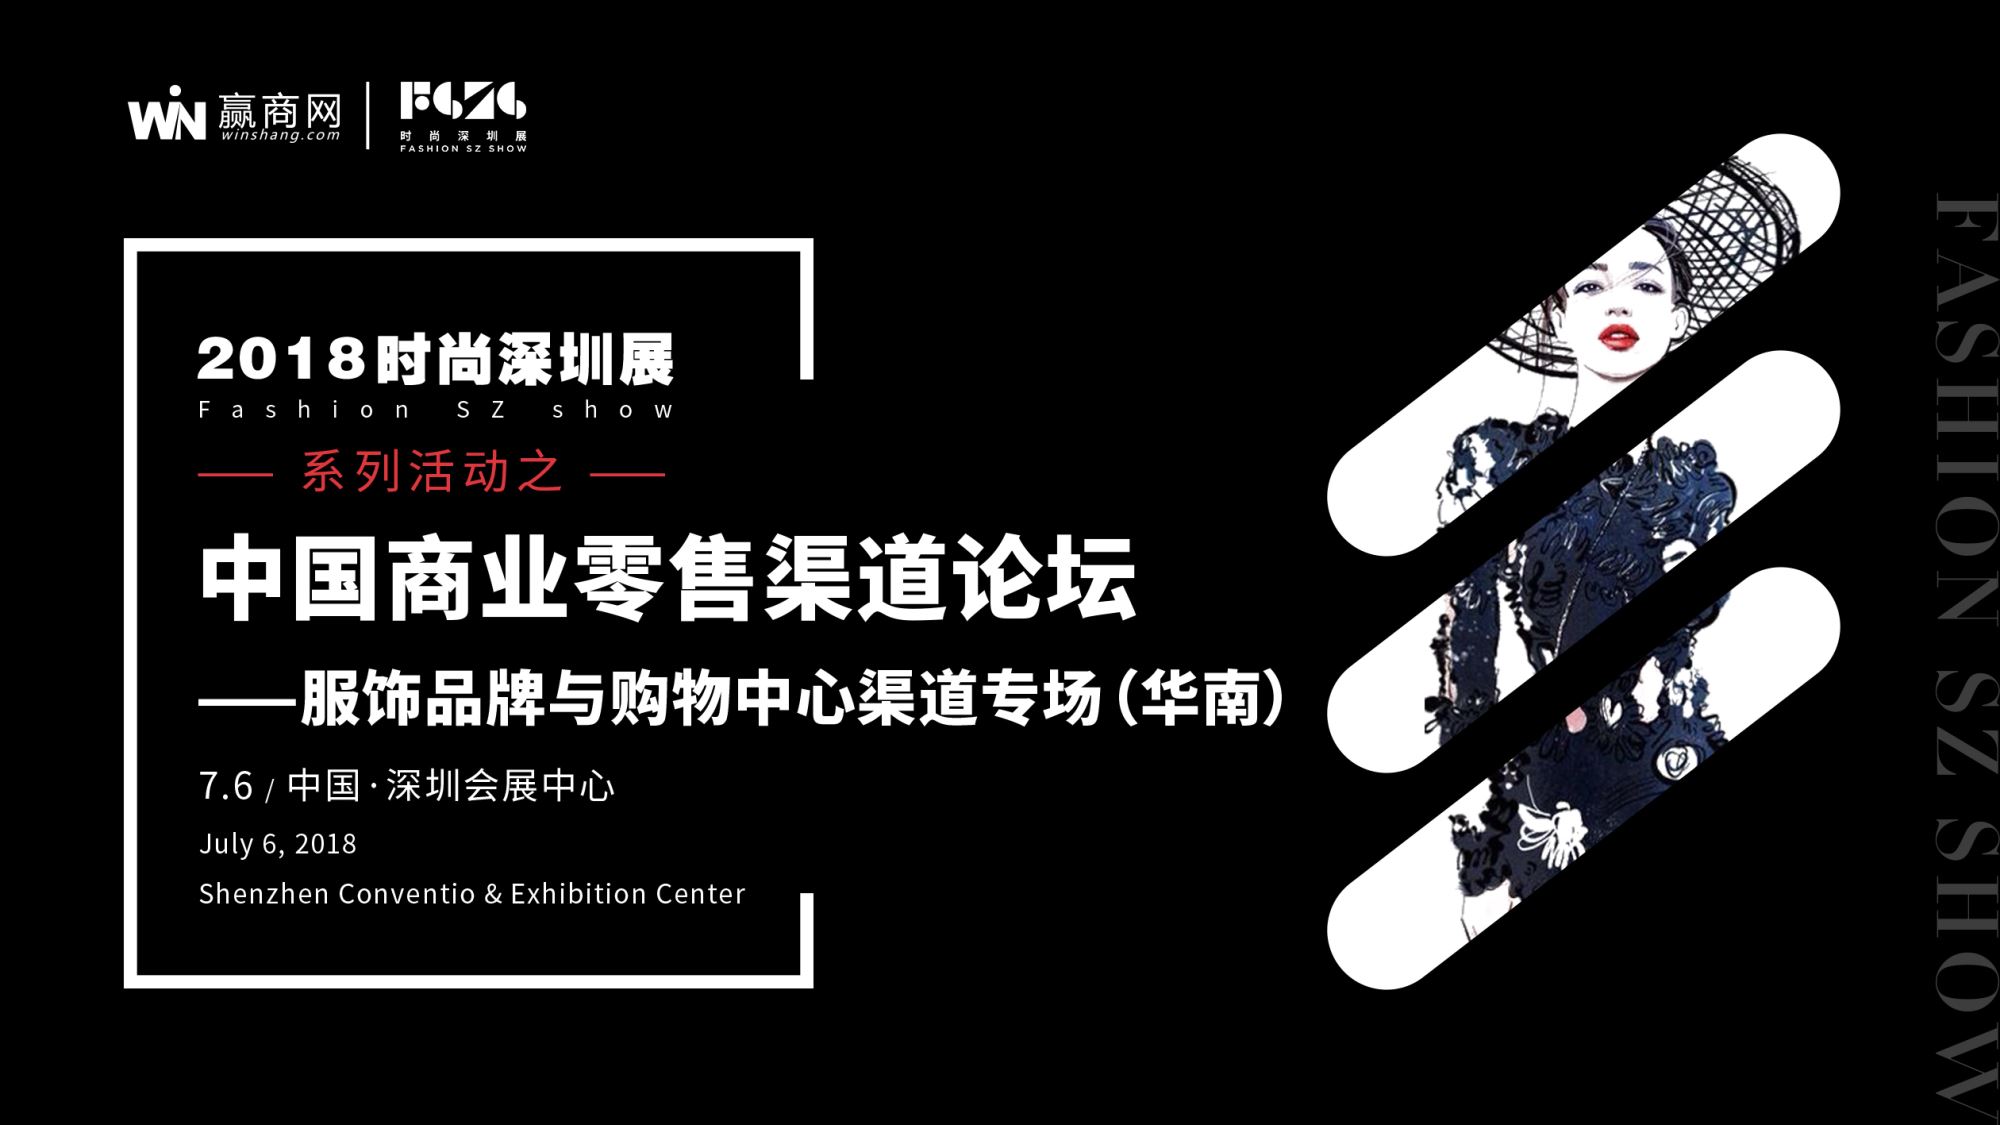 服饰品牌与购物中心渠道专场论坛于7月6日深圳举行-中国网地产